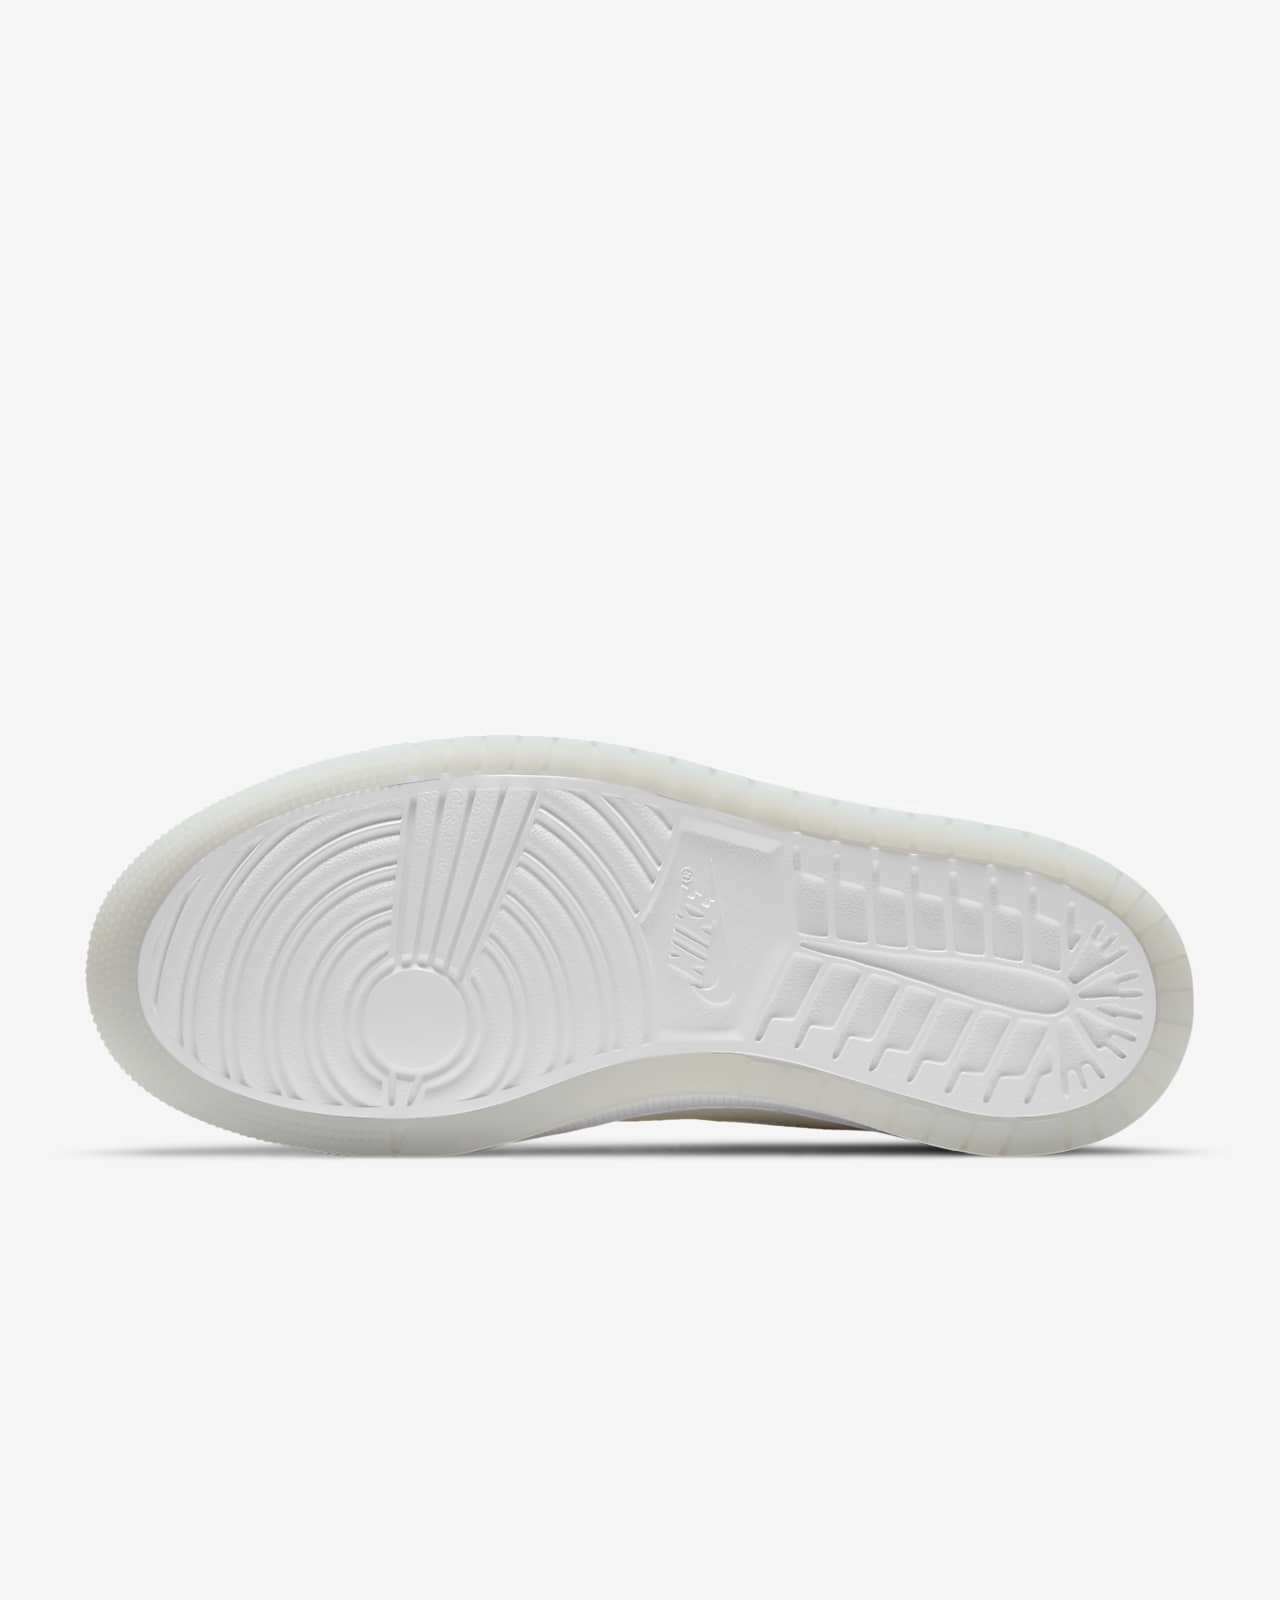 Air Jordan 1 Zoom Air Comfort Women's Shoes. Nike SG